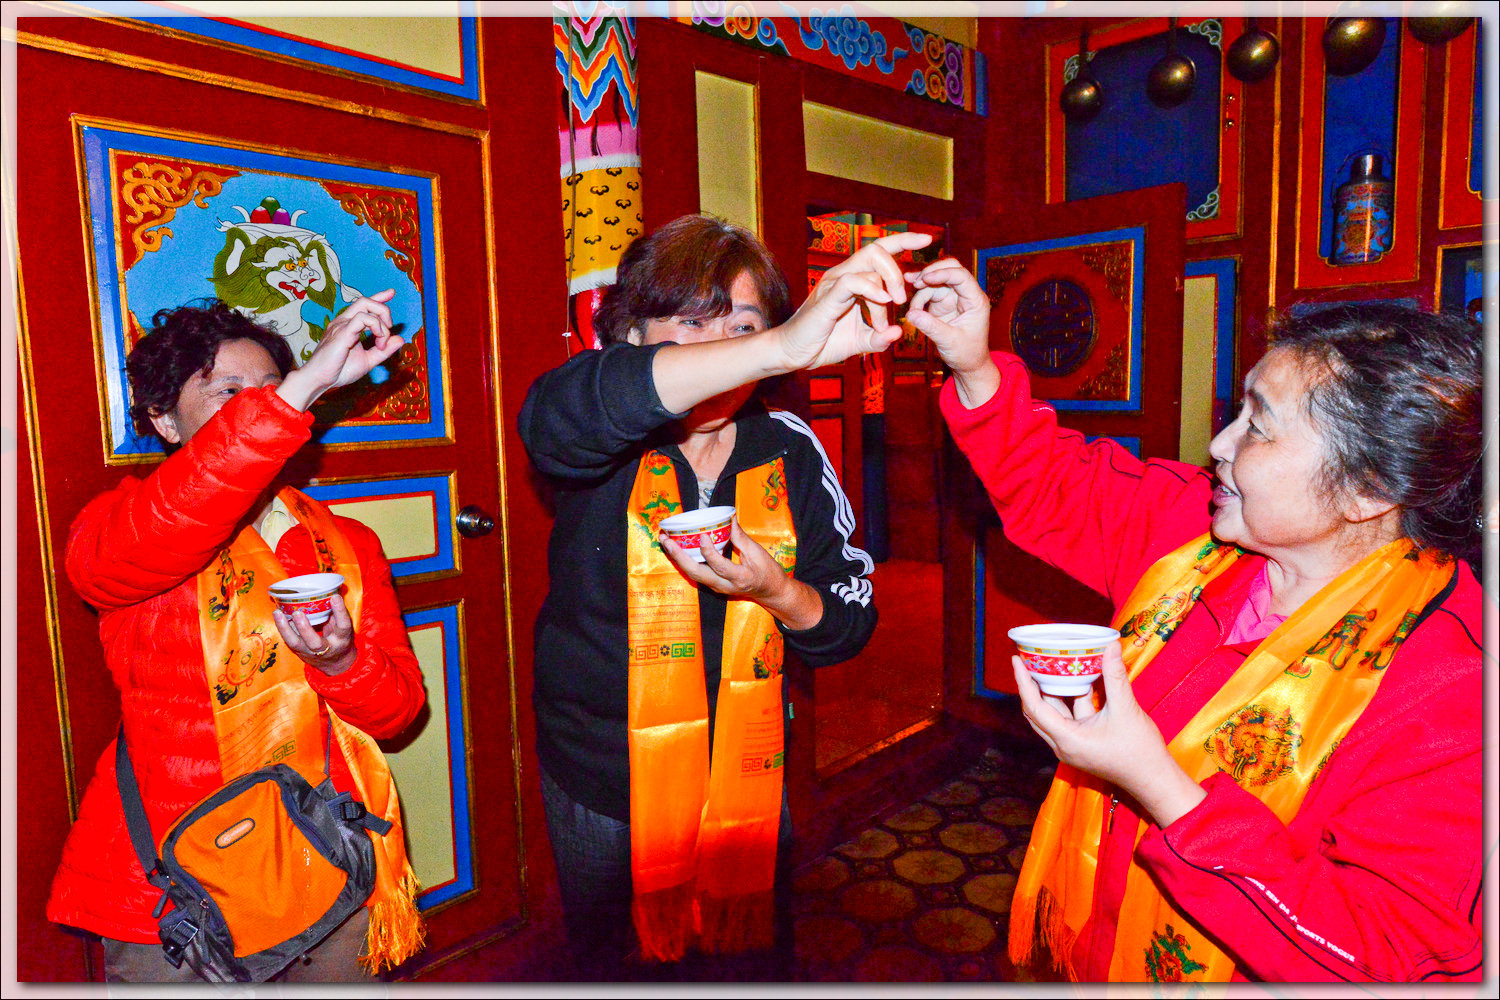 载歌载舞 平武白马藏族群众欢天喜地过春节|资讯频道_51网